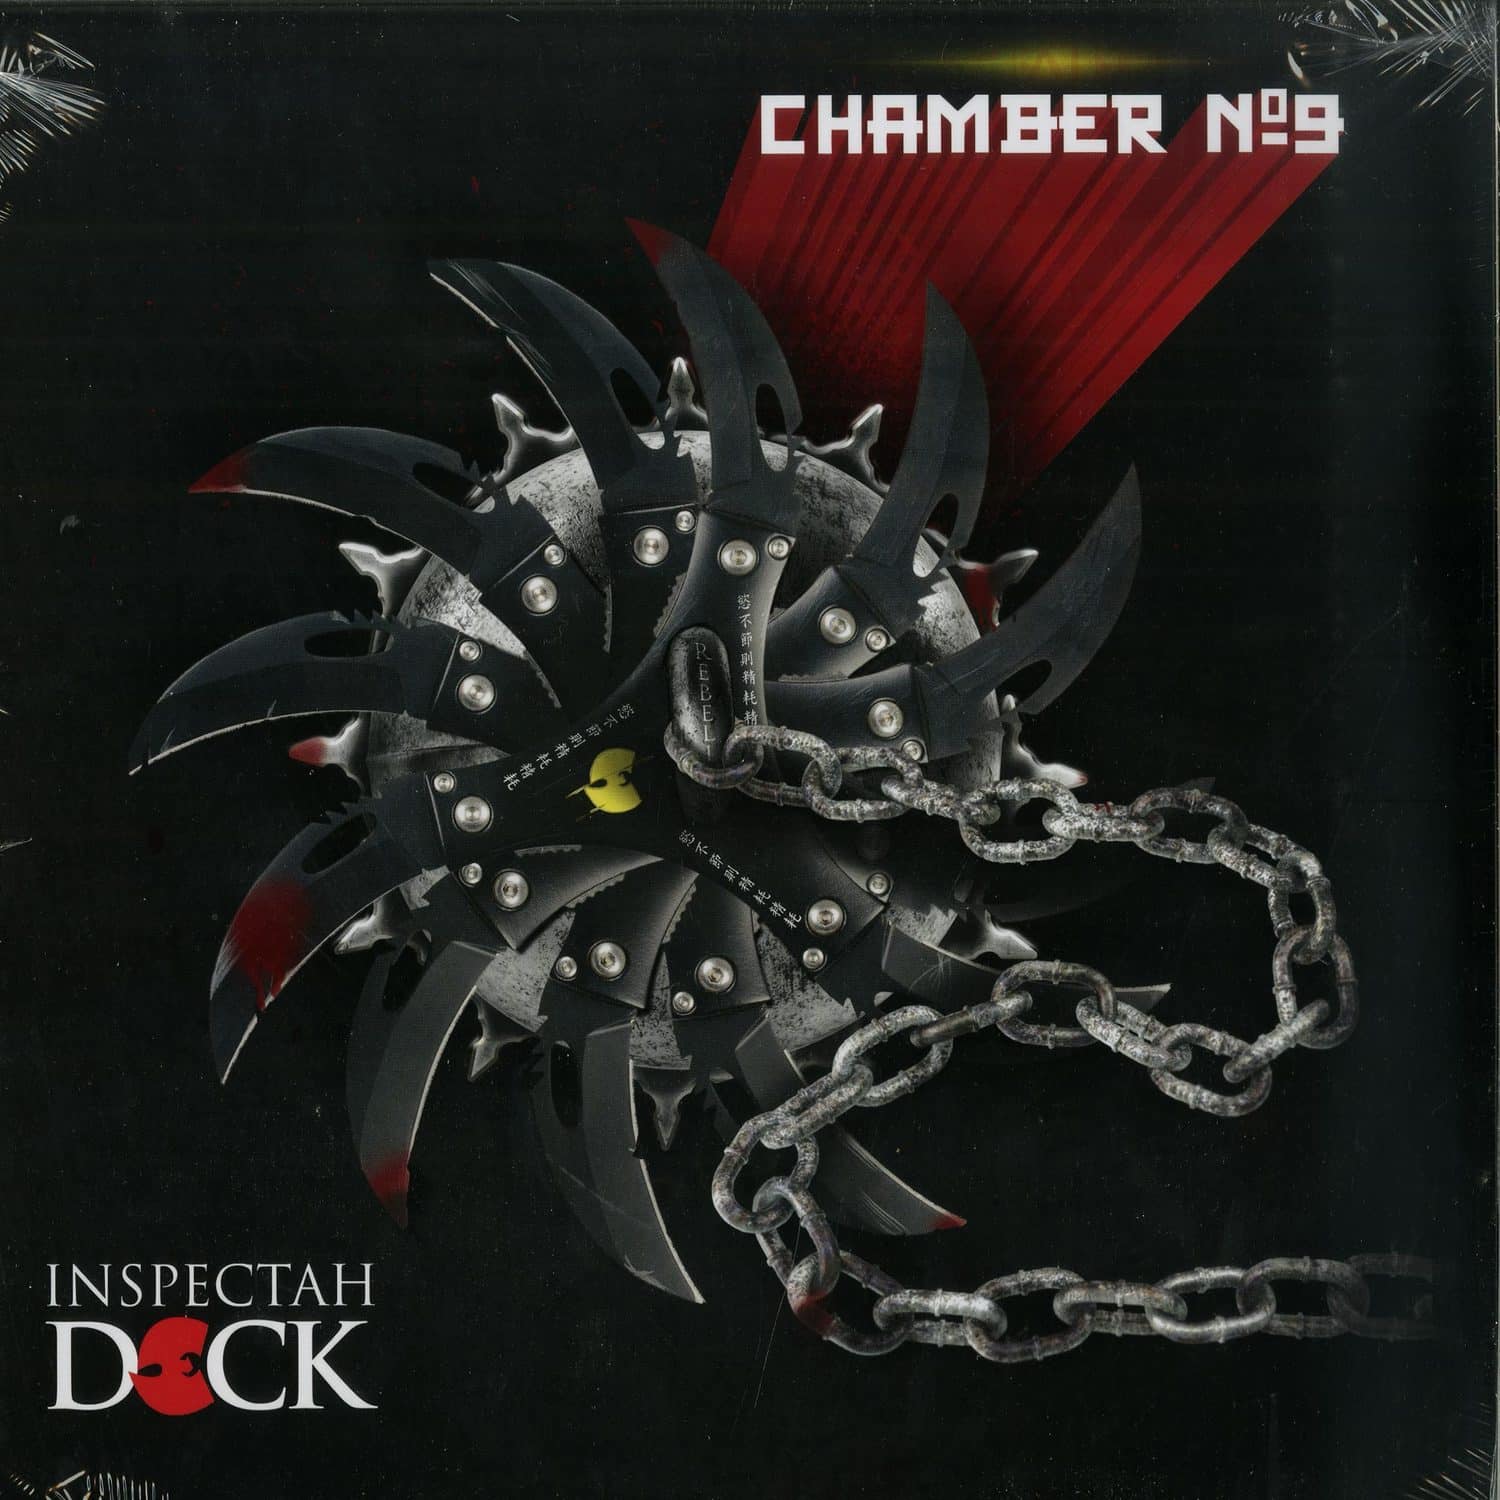 Inspectah Deck - CHAMBER NO.9 